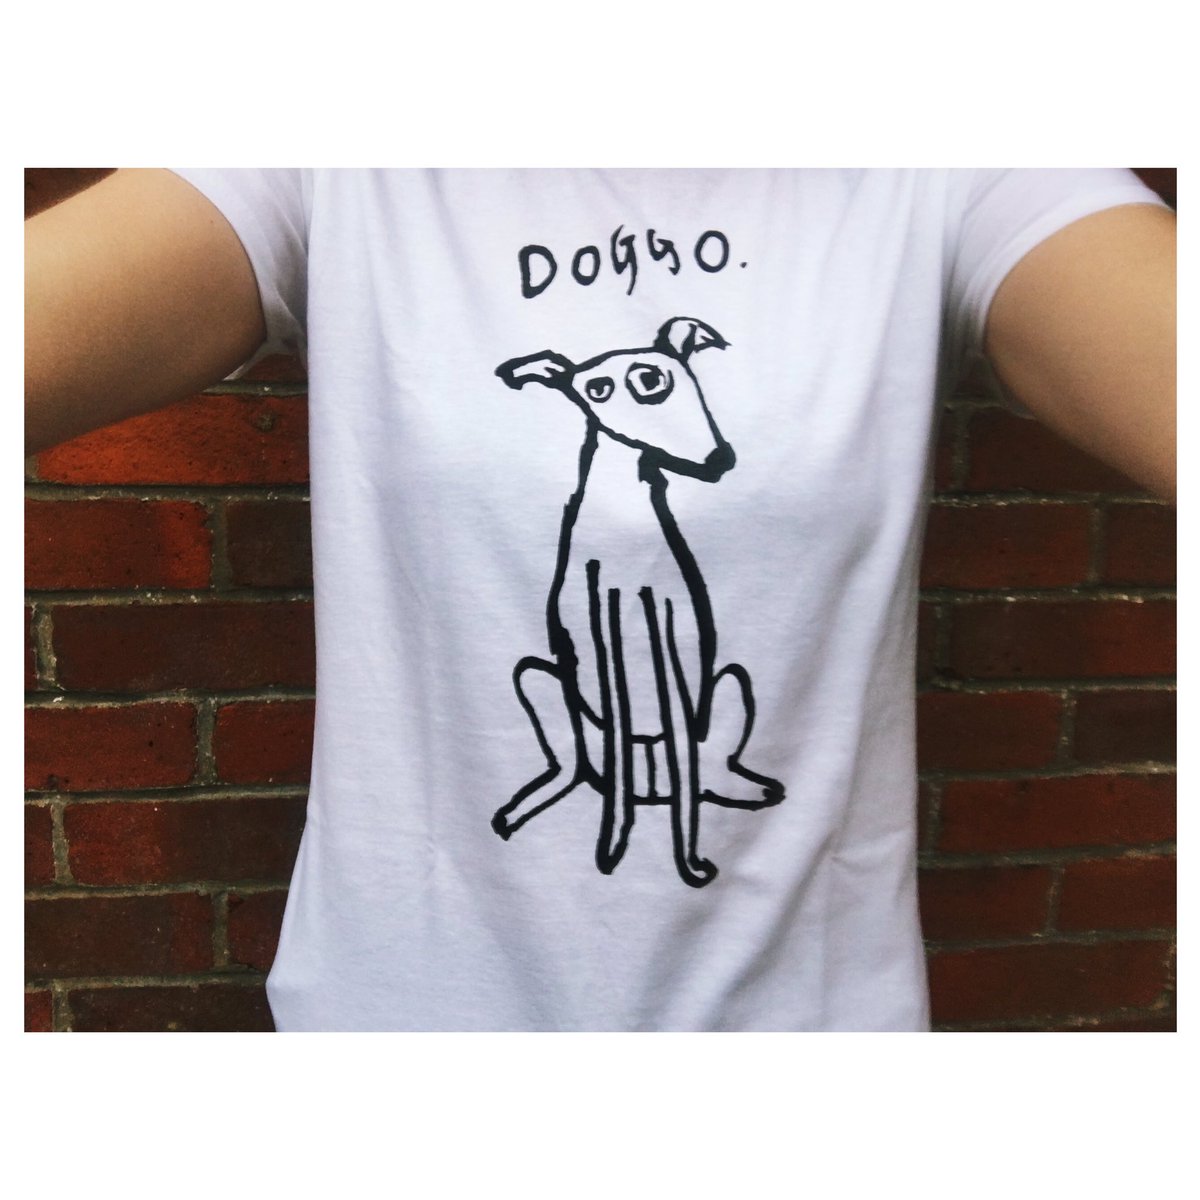 Doggo T-shirt etsy.me/2GpYsgw #ukgifthouram #ukgifthour #ukgham #habdmadehour #etsyclub #teametsy #houndsoftwitter